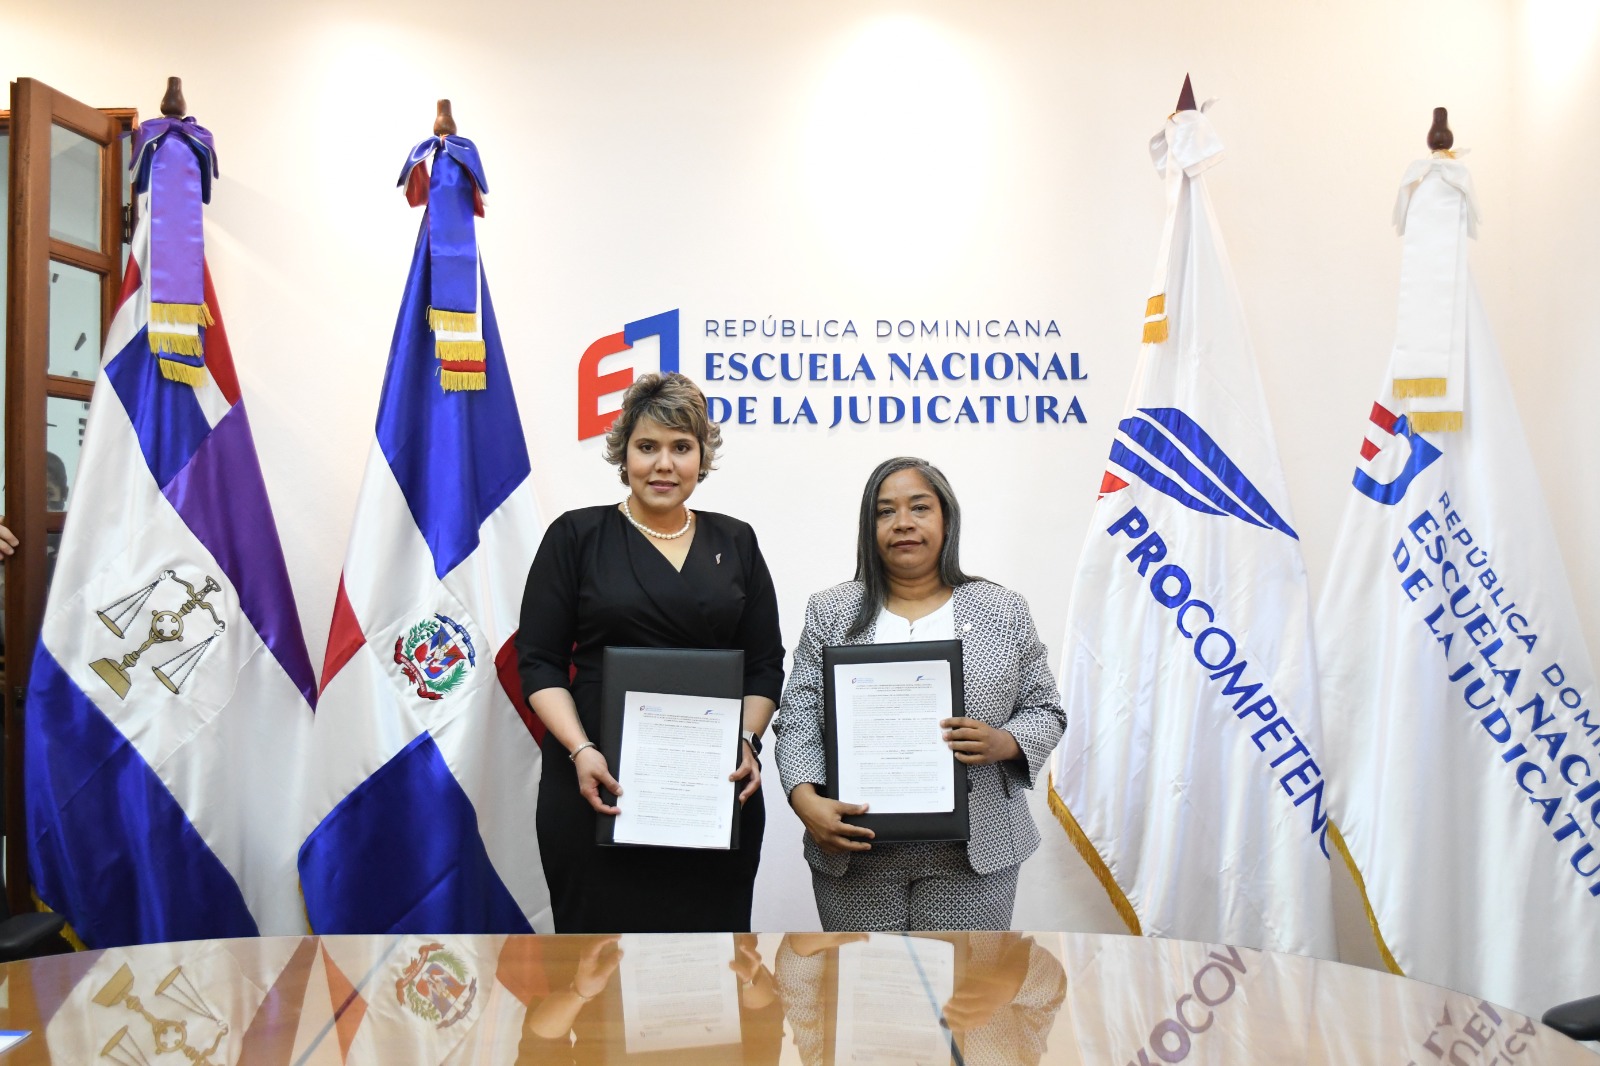 REPÚBLICA DOMINICANA: Procompetencia y Consejo Nacional de la Judicatura firman acuerdo interinstitucional para capacitar personal de ambas entidades